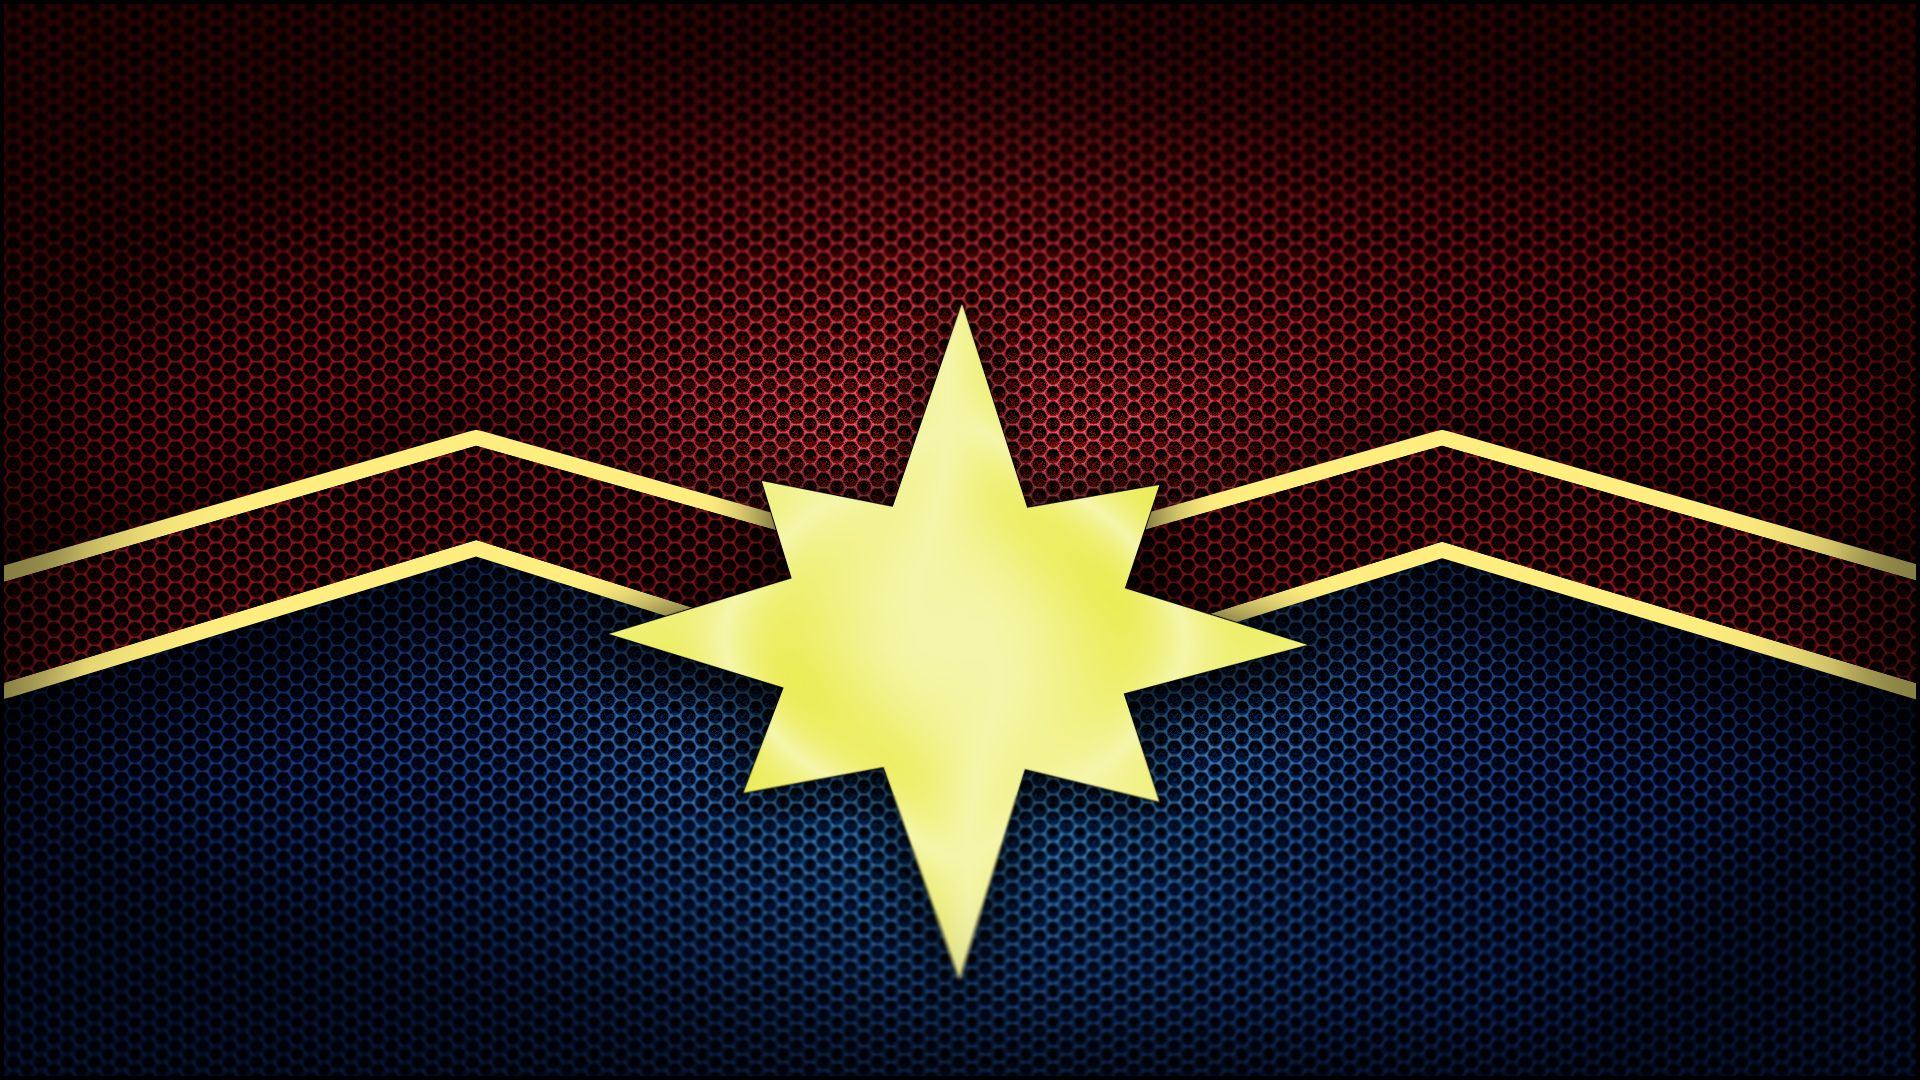 Captain Marvel Wallpaper Pc - HD Wallpaper 